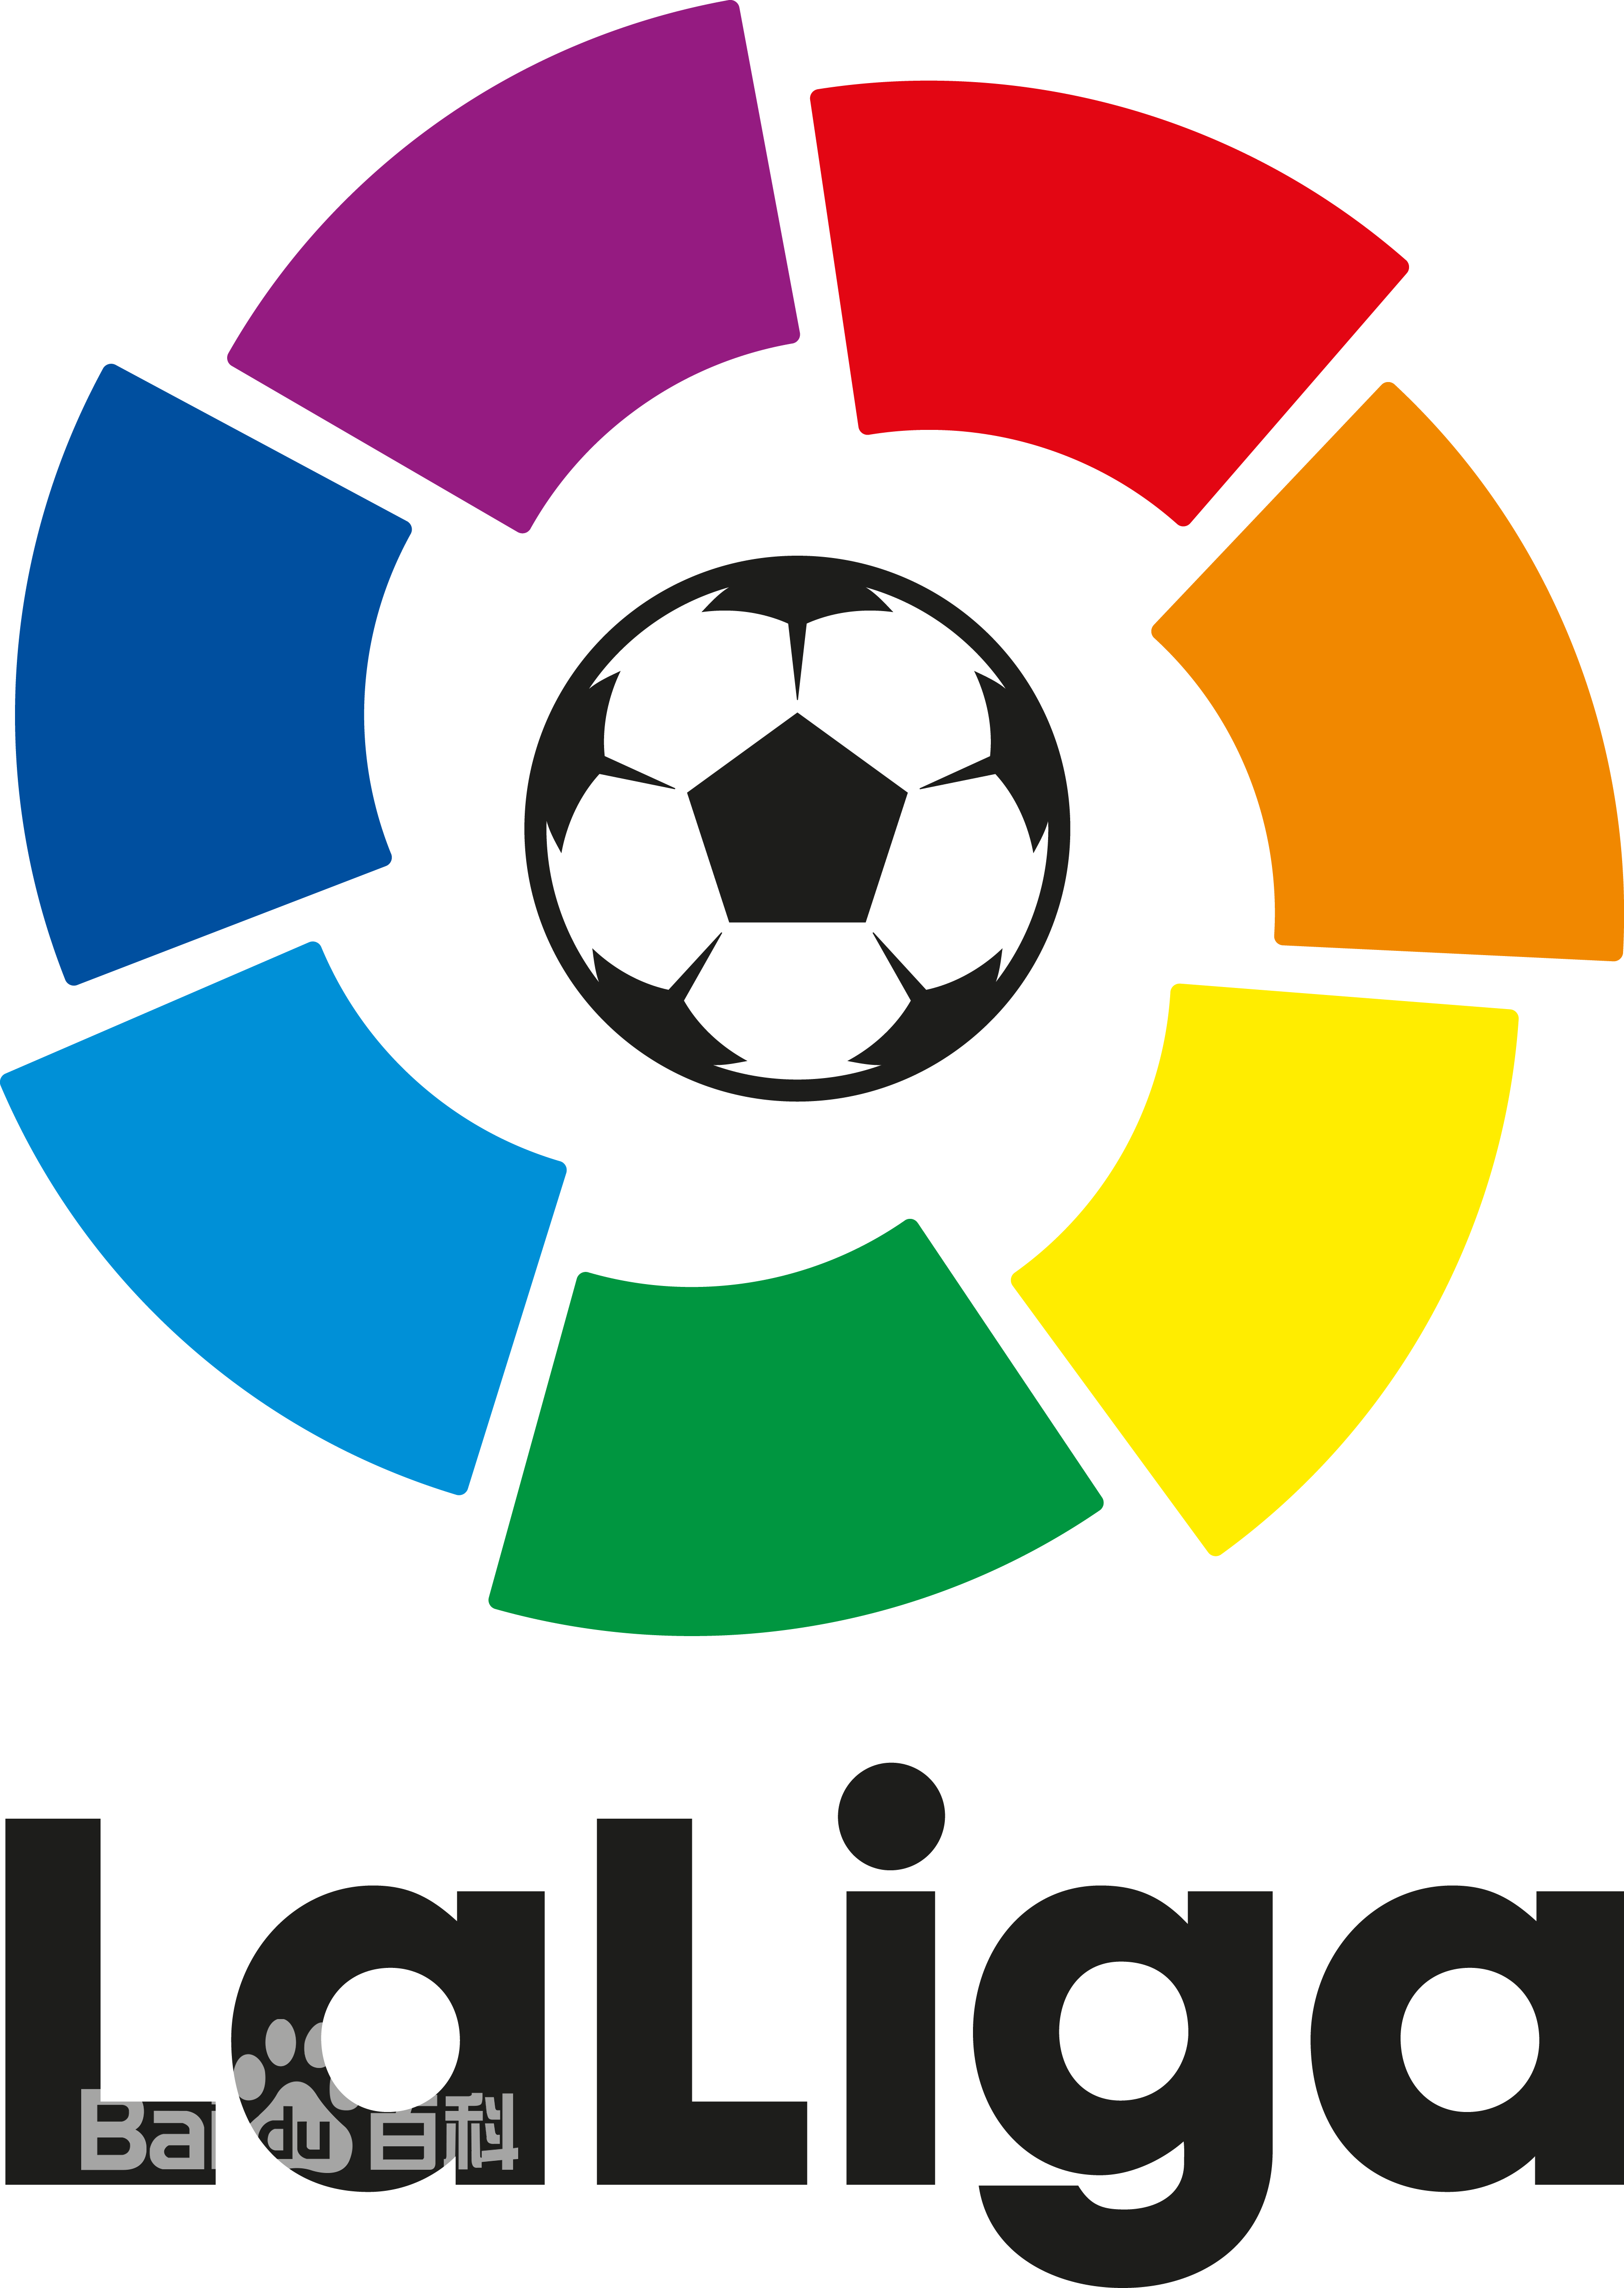 西甲历史上成绩最好的7支球队分别是:皇马,巴萨,马竞,瓦伦西亚,毕尔巴